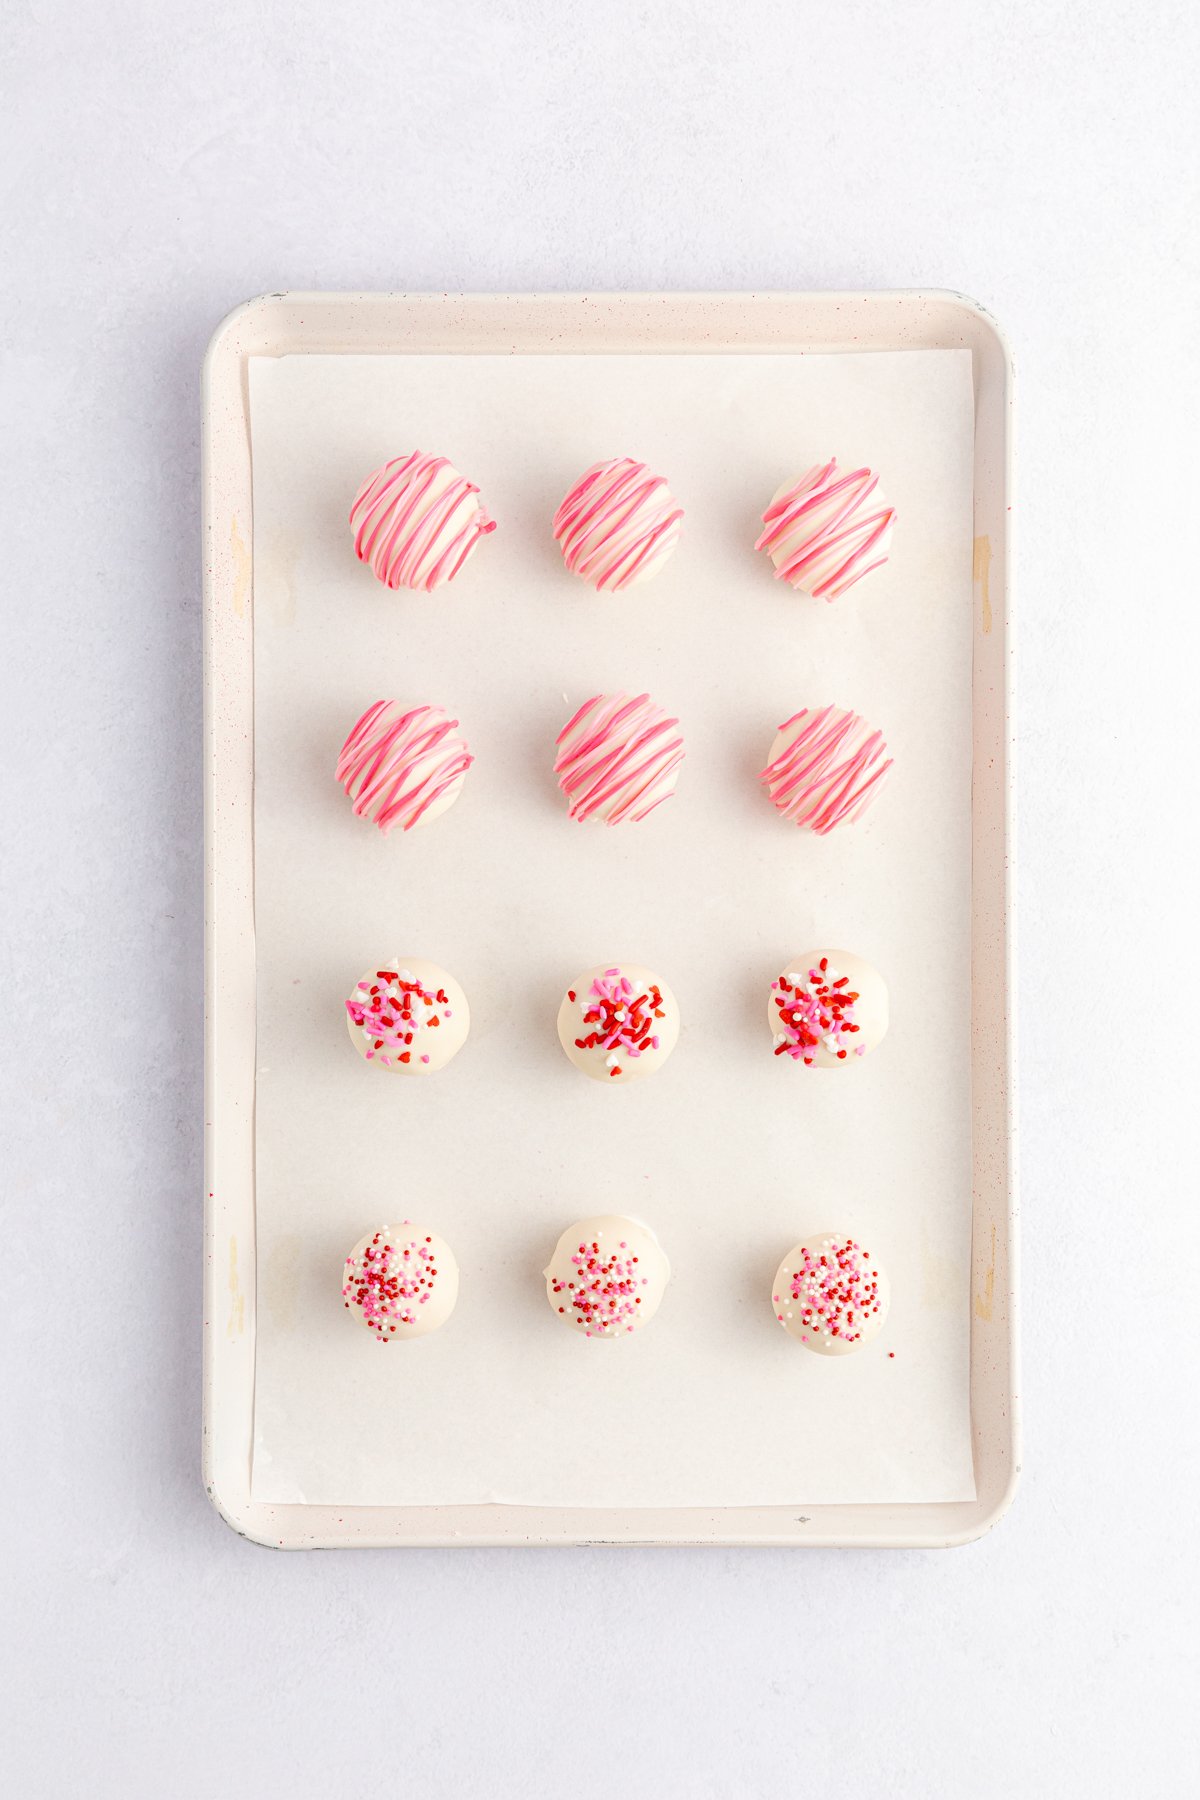 coated strawberry cake balls on a baking sheet